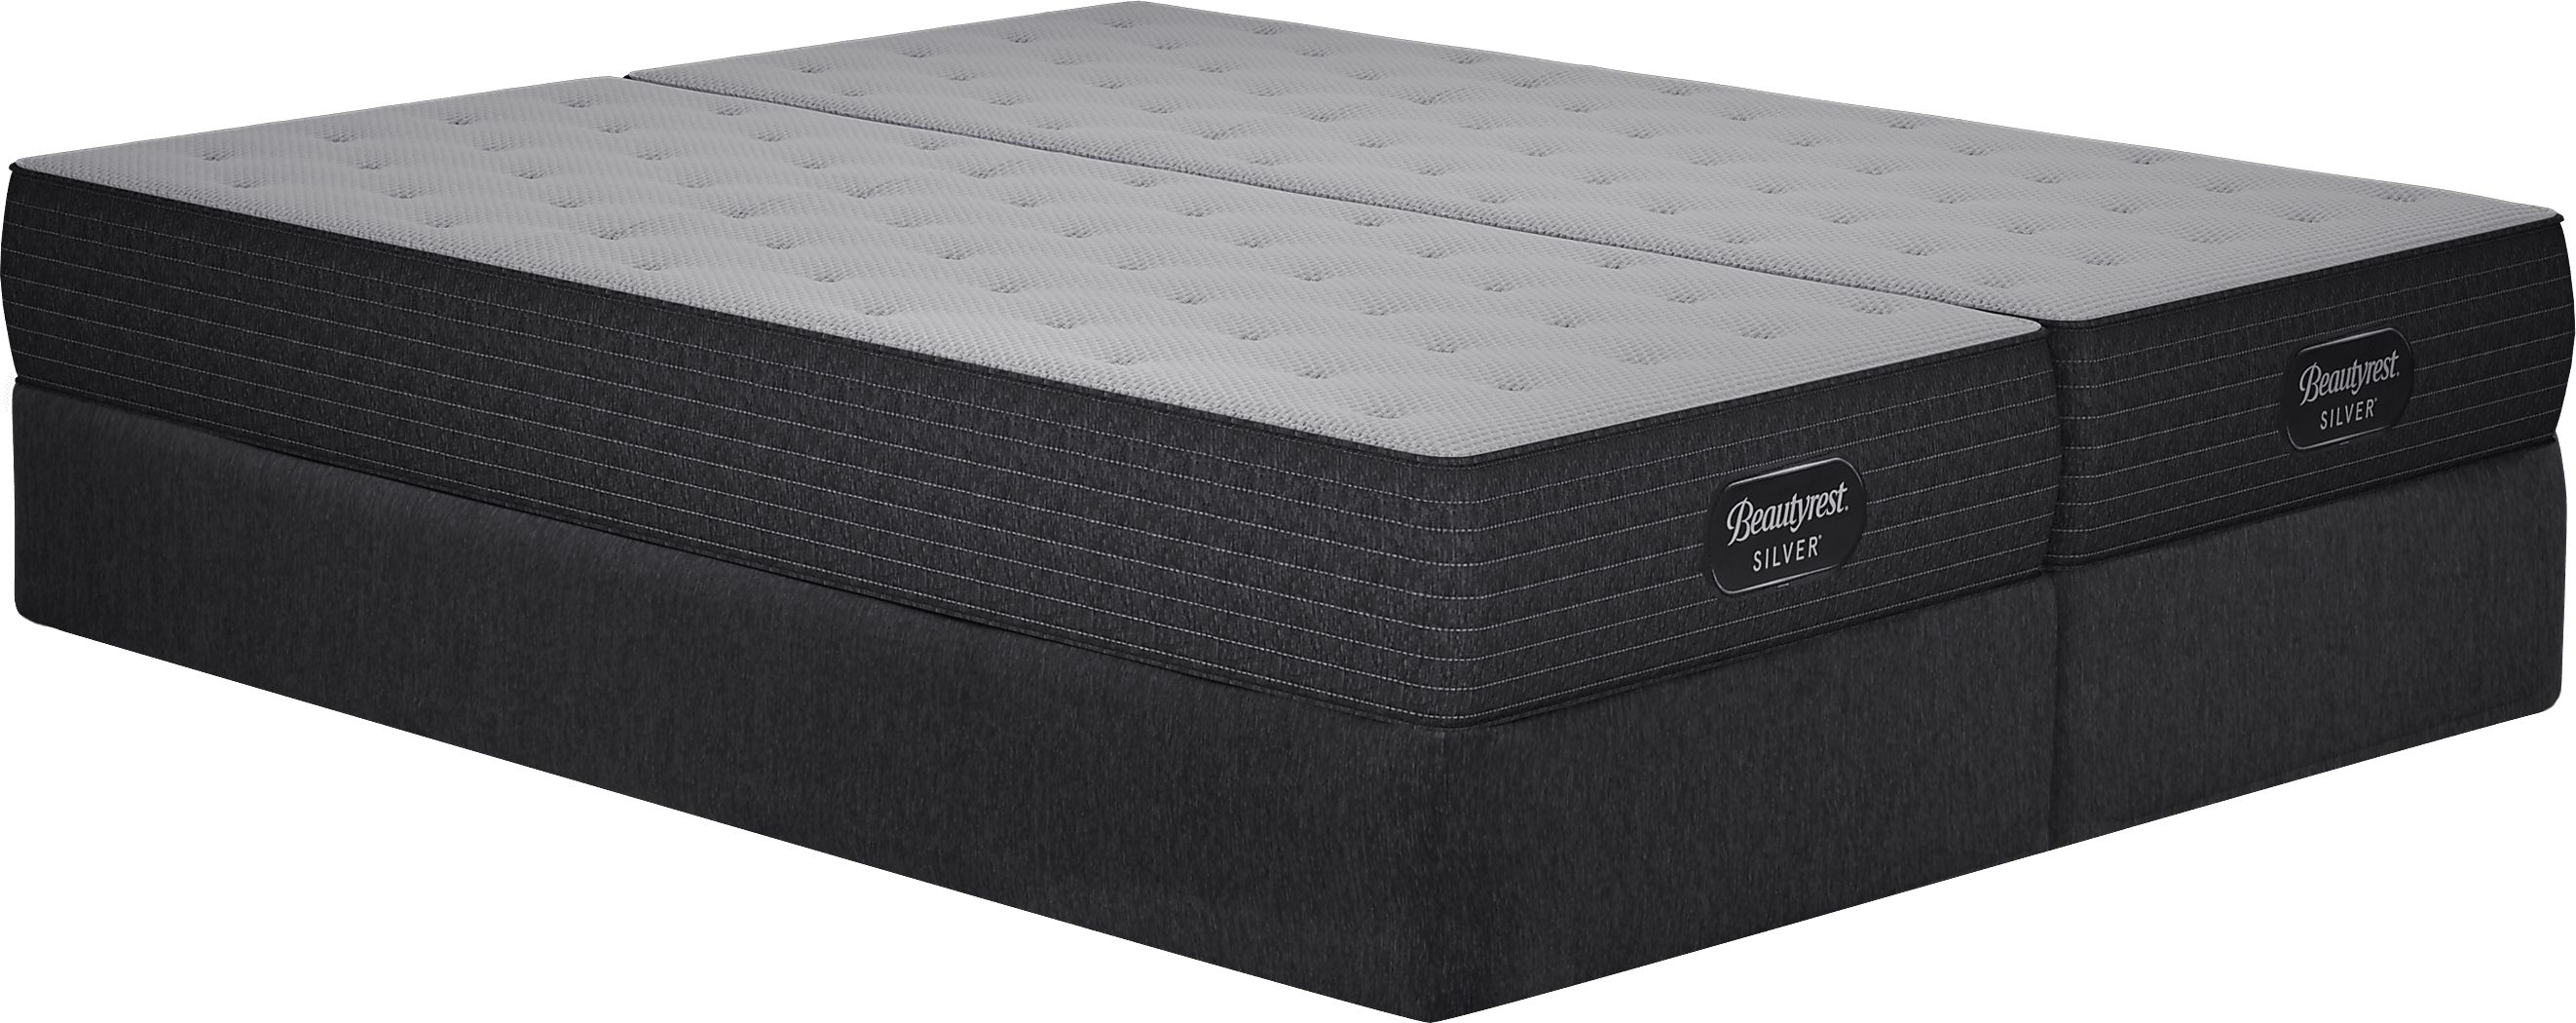 beautyrest clover springs mattress reviews